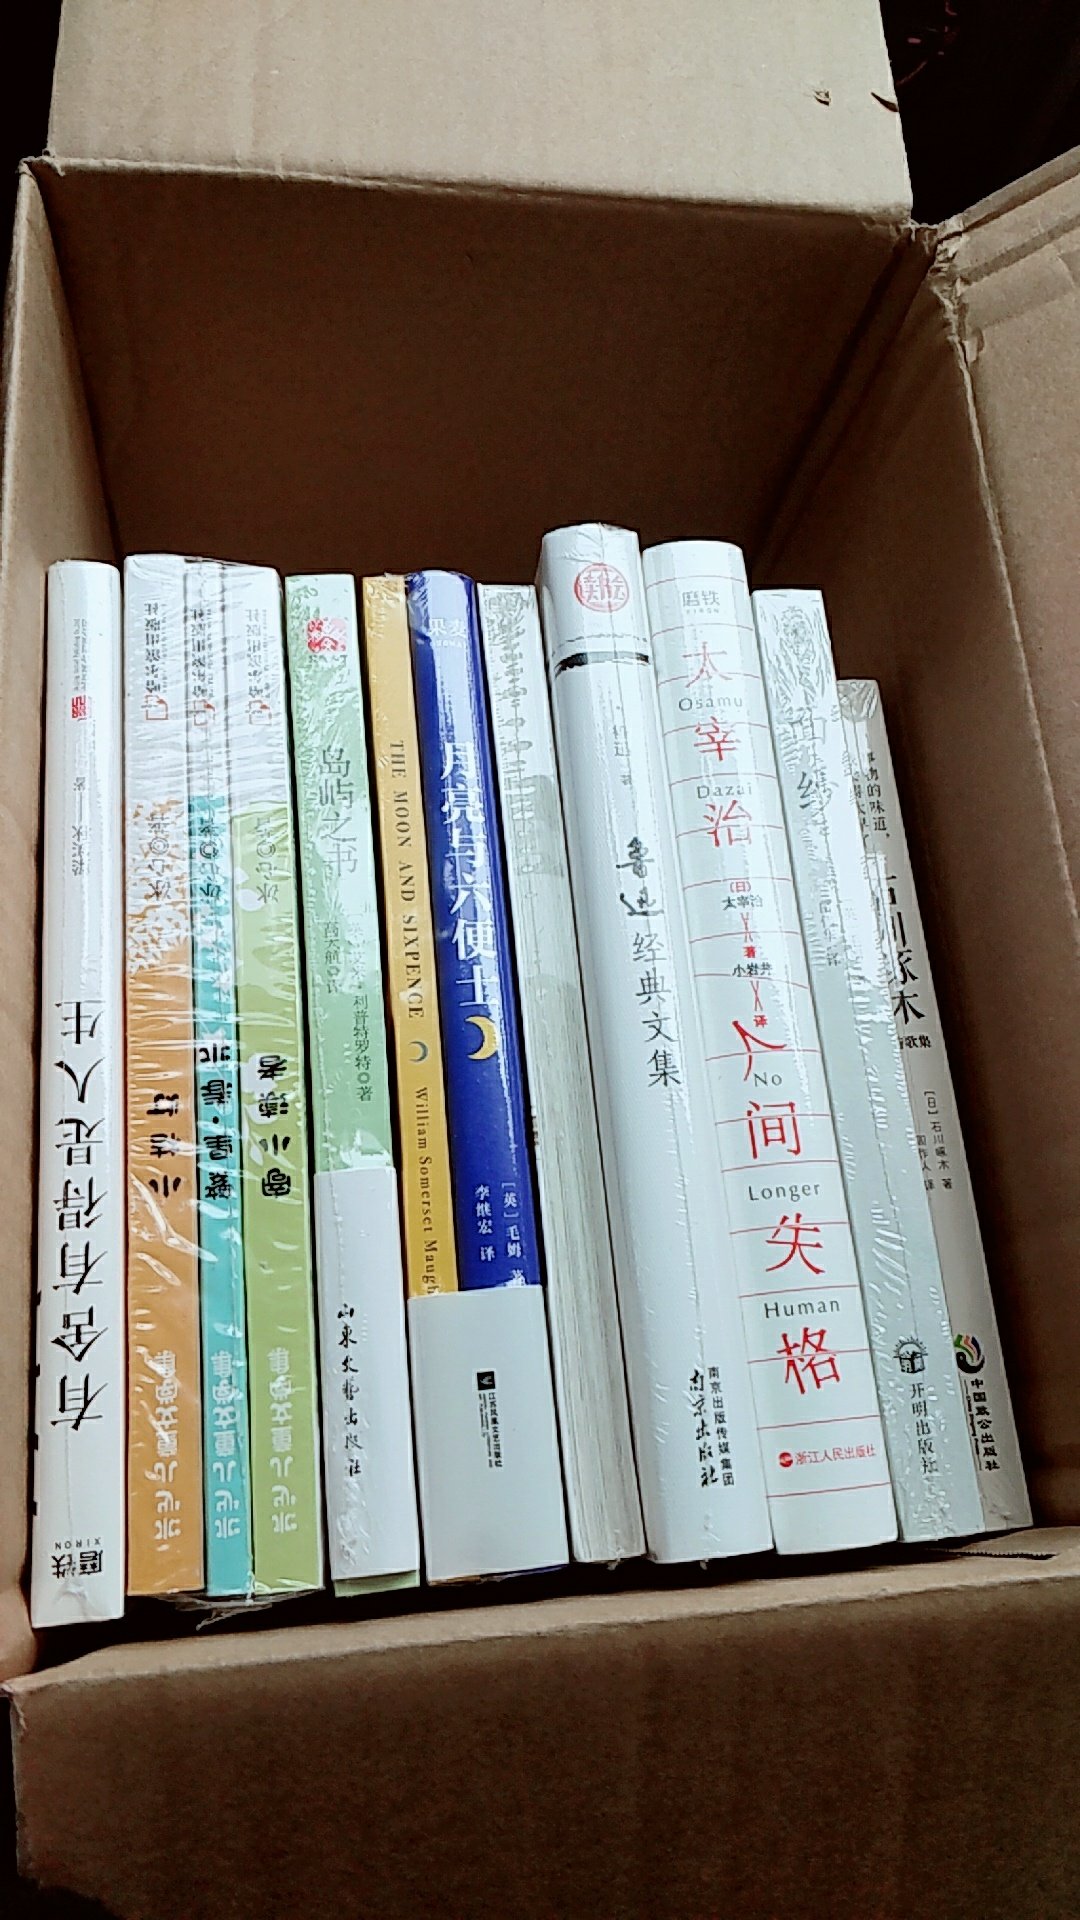 买了10几本书，每本都有塑料膜封好，感觉特别棒。